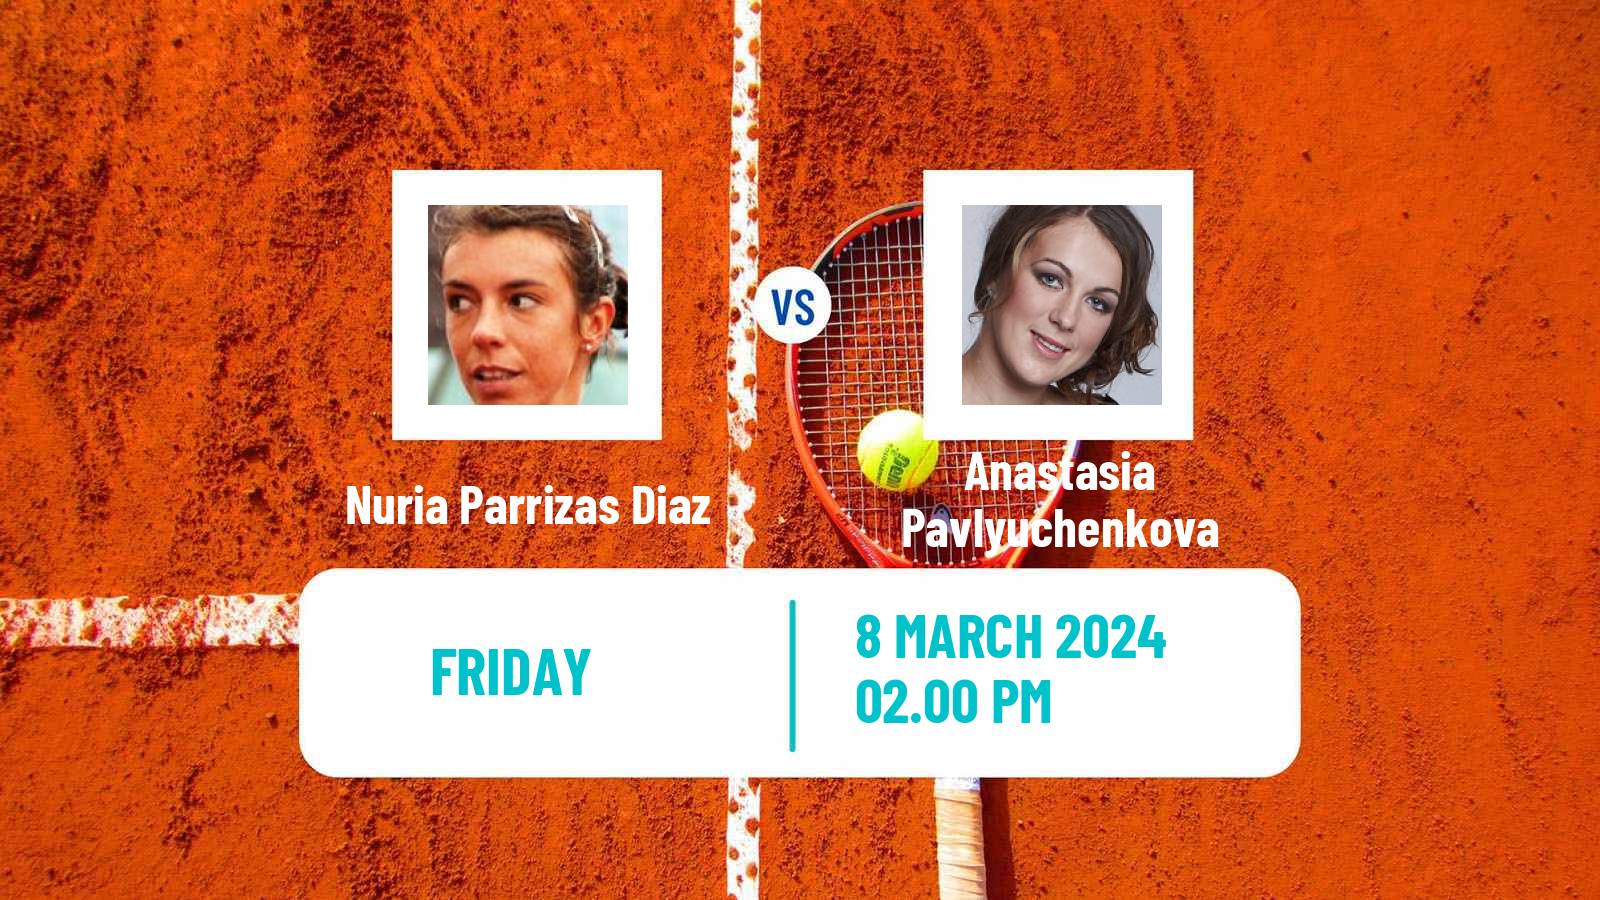 Tennis WTA Indian Wells Nuria Parrizas Diaz - Anastasia Pavlyuchenkova